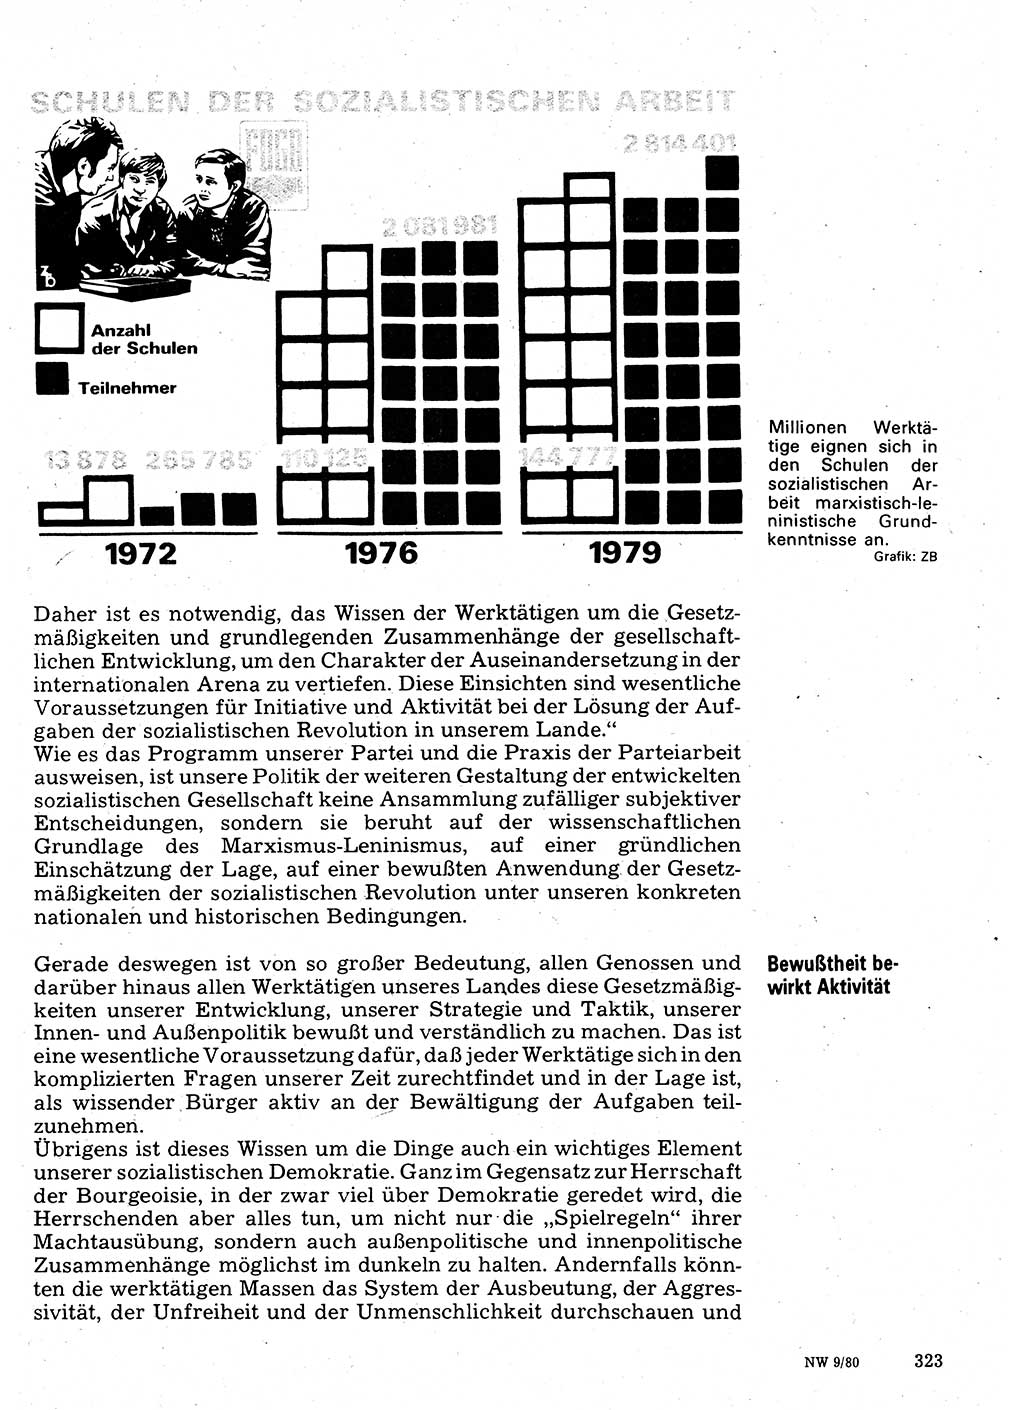 Neuer Weg (NW), Organ des Zentralkomitees (ZK) der SED (Sozialistische Einheitspartei Deutschlands) für Fragen des Parteilebens, 35. Jahrgang [Deutsche Demokratische Republik (DDR)] 1980, Seite 323 (NW ZK SED DDR 1980, S. 323)